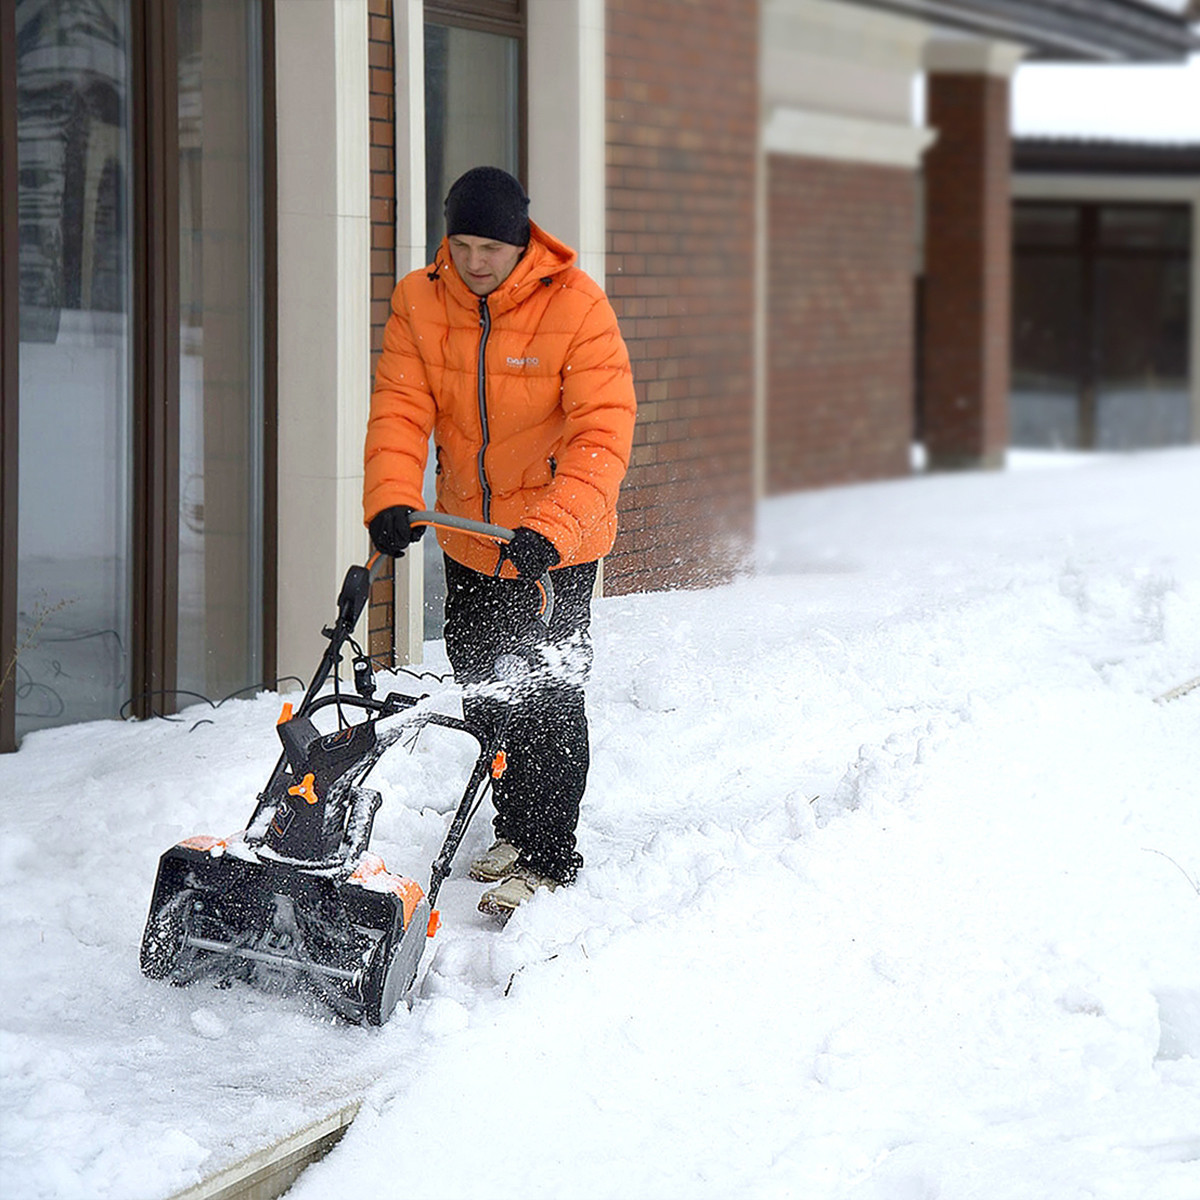 Зимний бизнес: как заработать на уборке снега